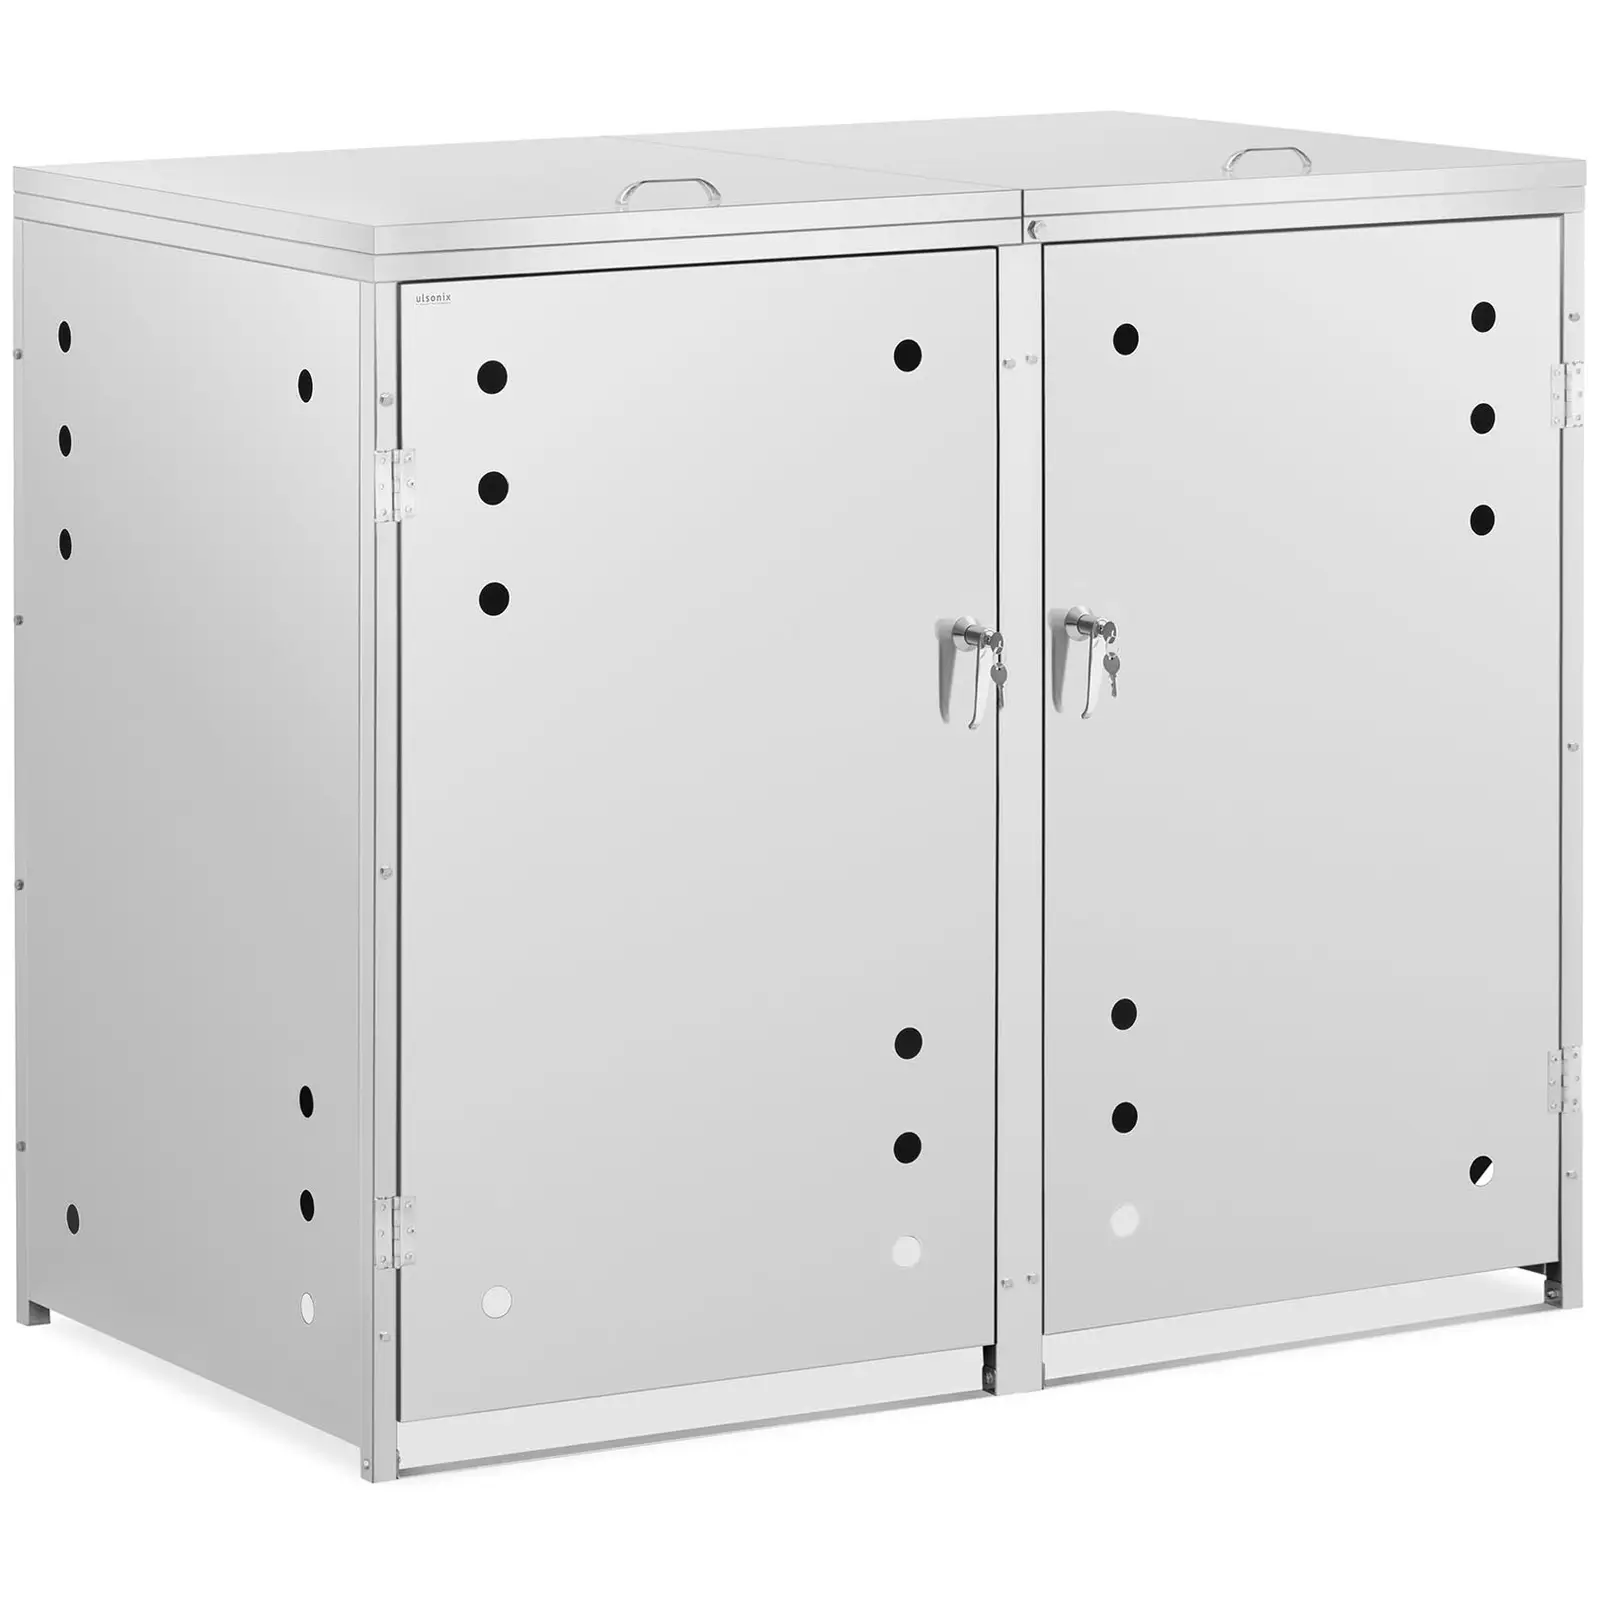 Mueble para cubos de basura - 2 x 240 L - orificios de ventilación